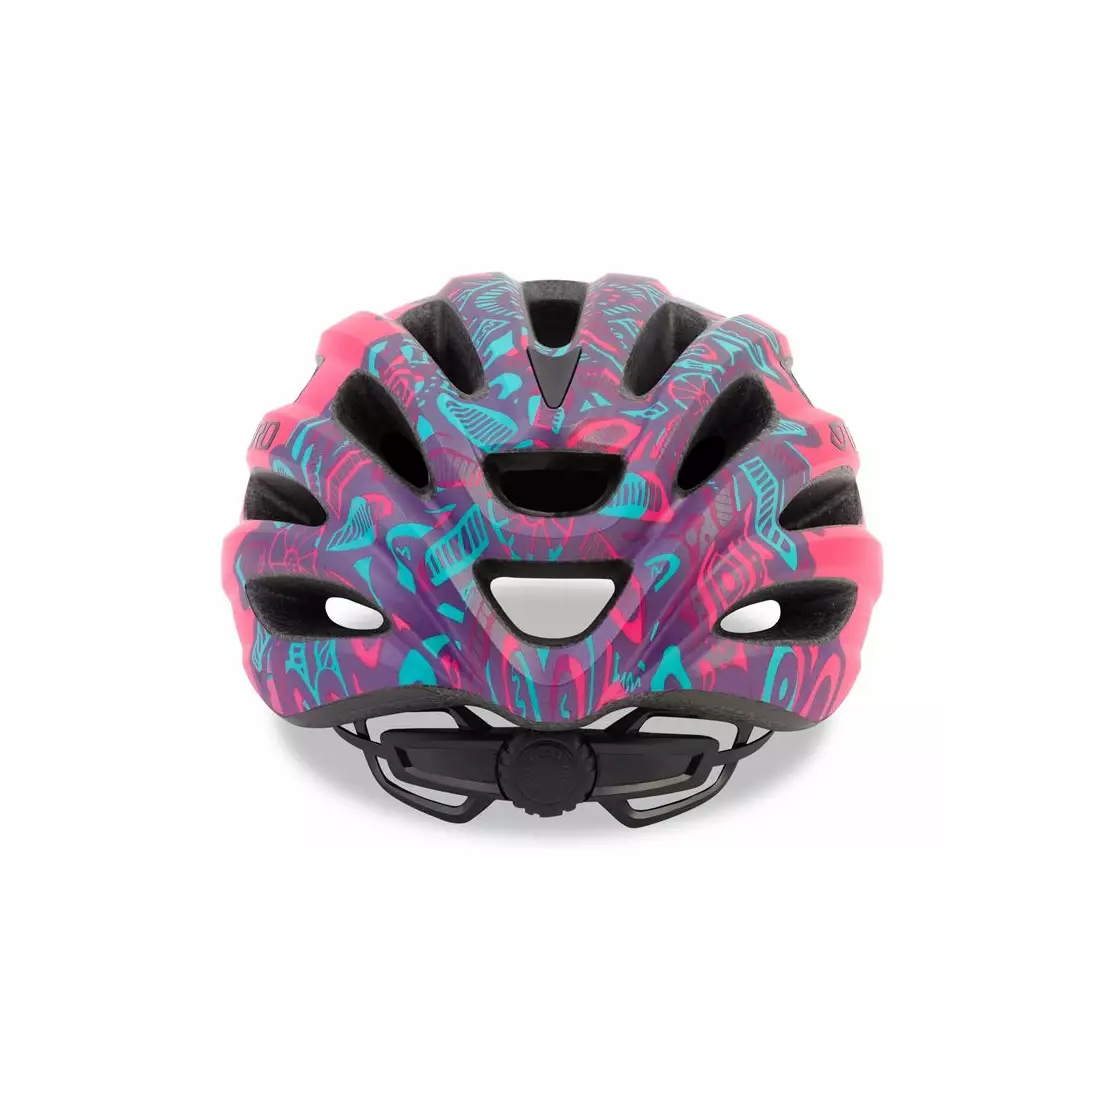 GIRO GR-7089359 Dětská juniorská helma HALE matte bright pink 